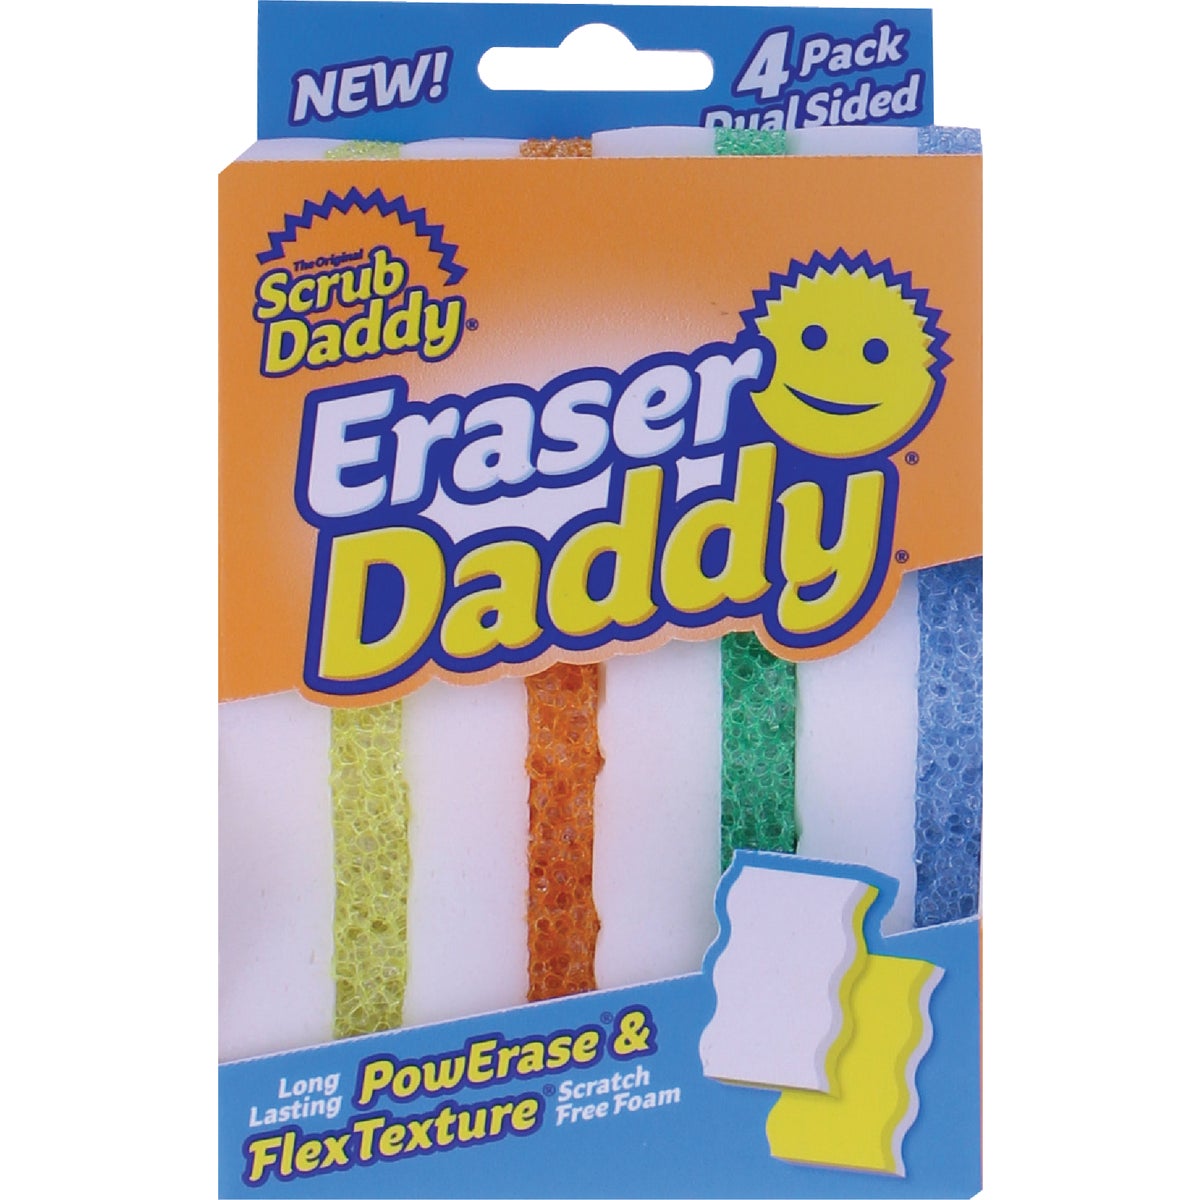 Scrub Daddy Scrub Daddy Eraser Daddy Variety Pack 6 ct